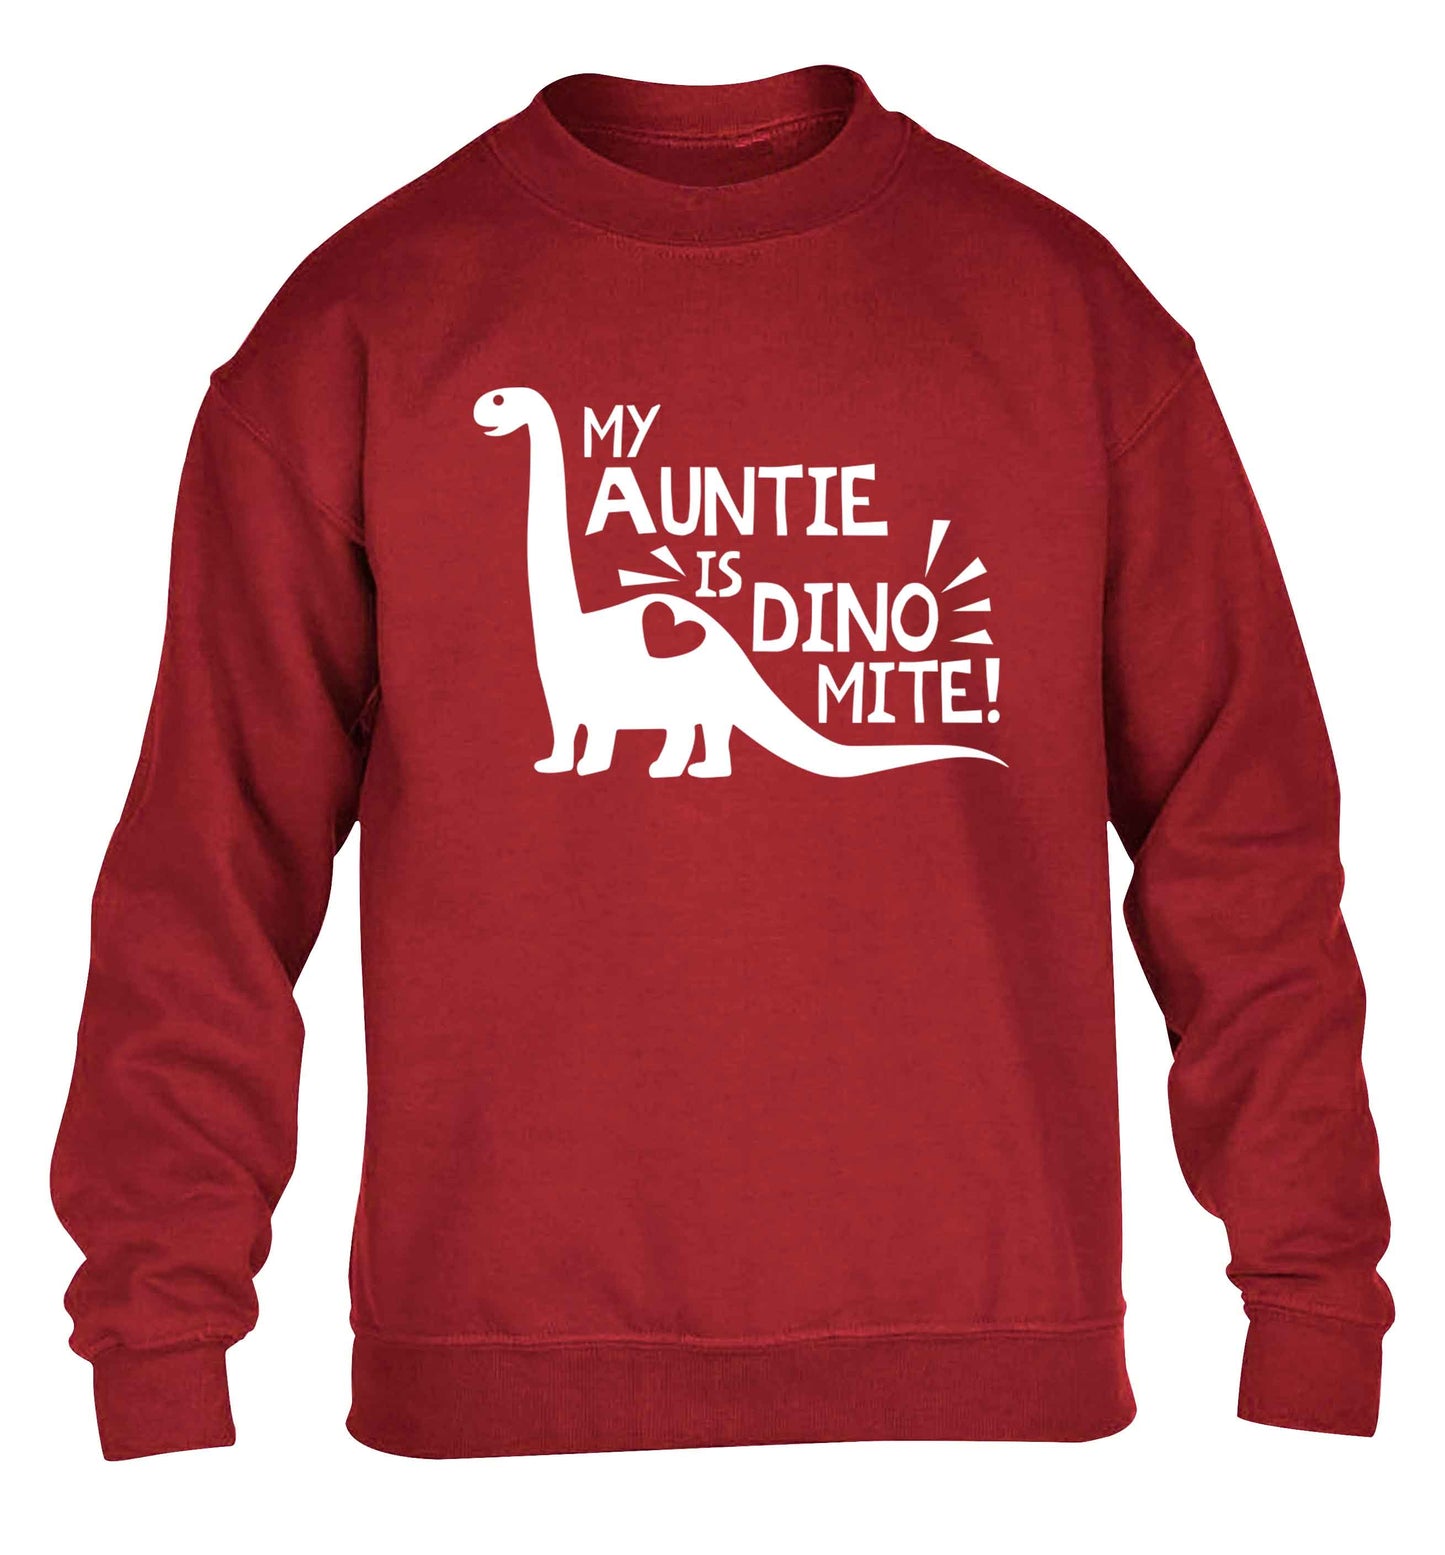 My auntie is dinomite! children's grey sweater 12-13 Years